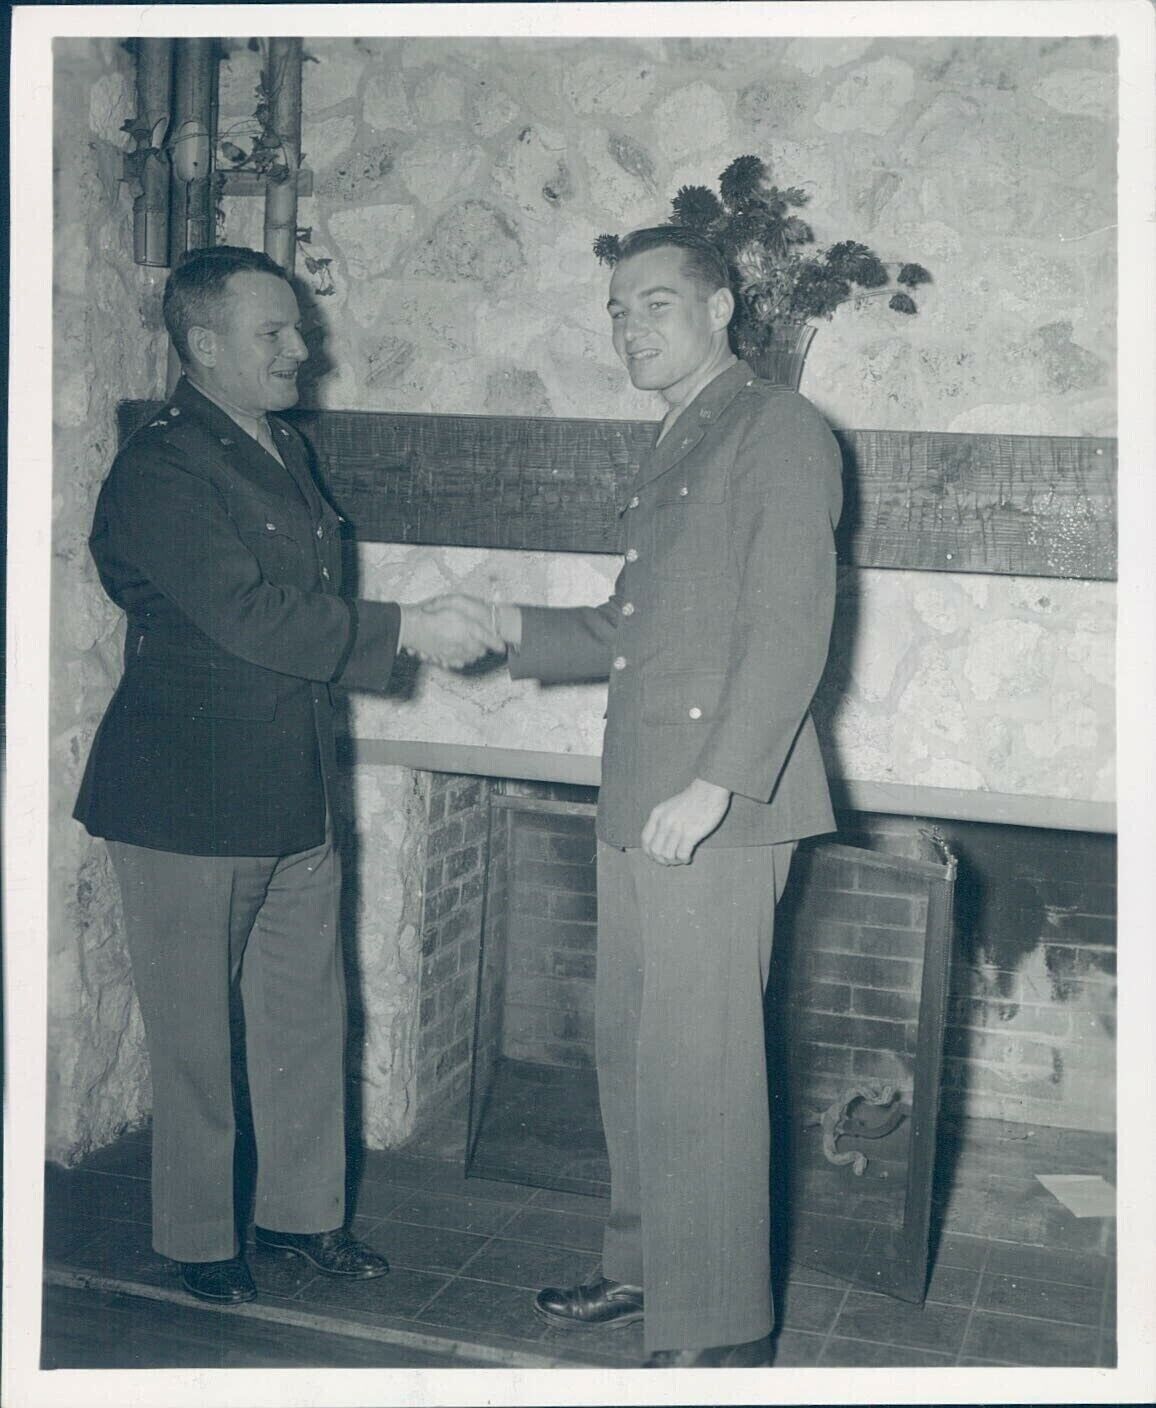 1943 General AD Ogden Ben Military Men Vintage Original Newspaper Press Photo